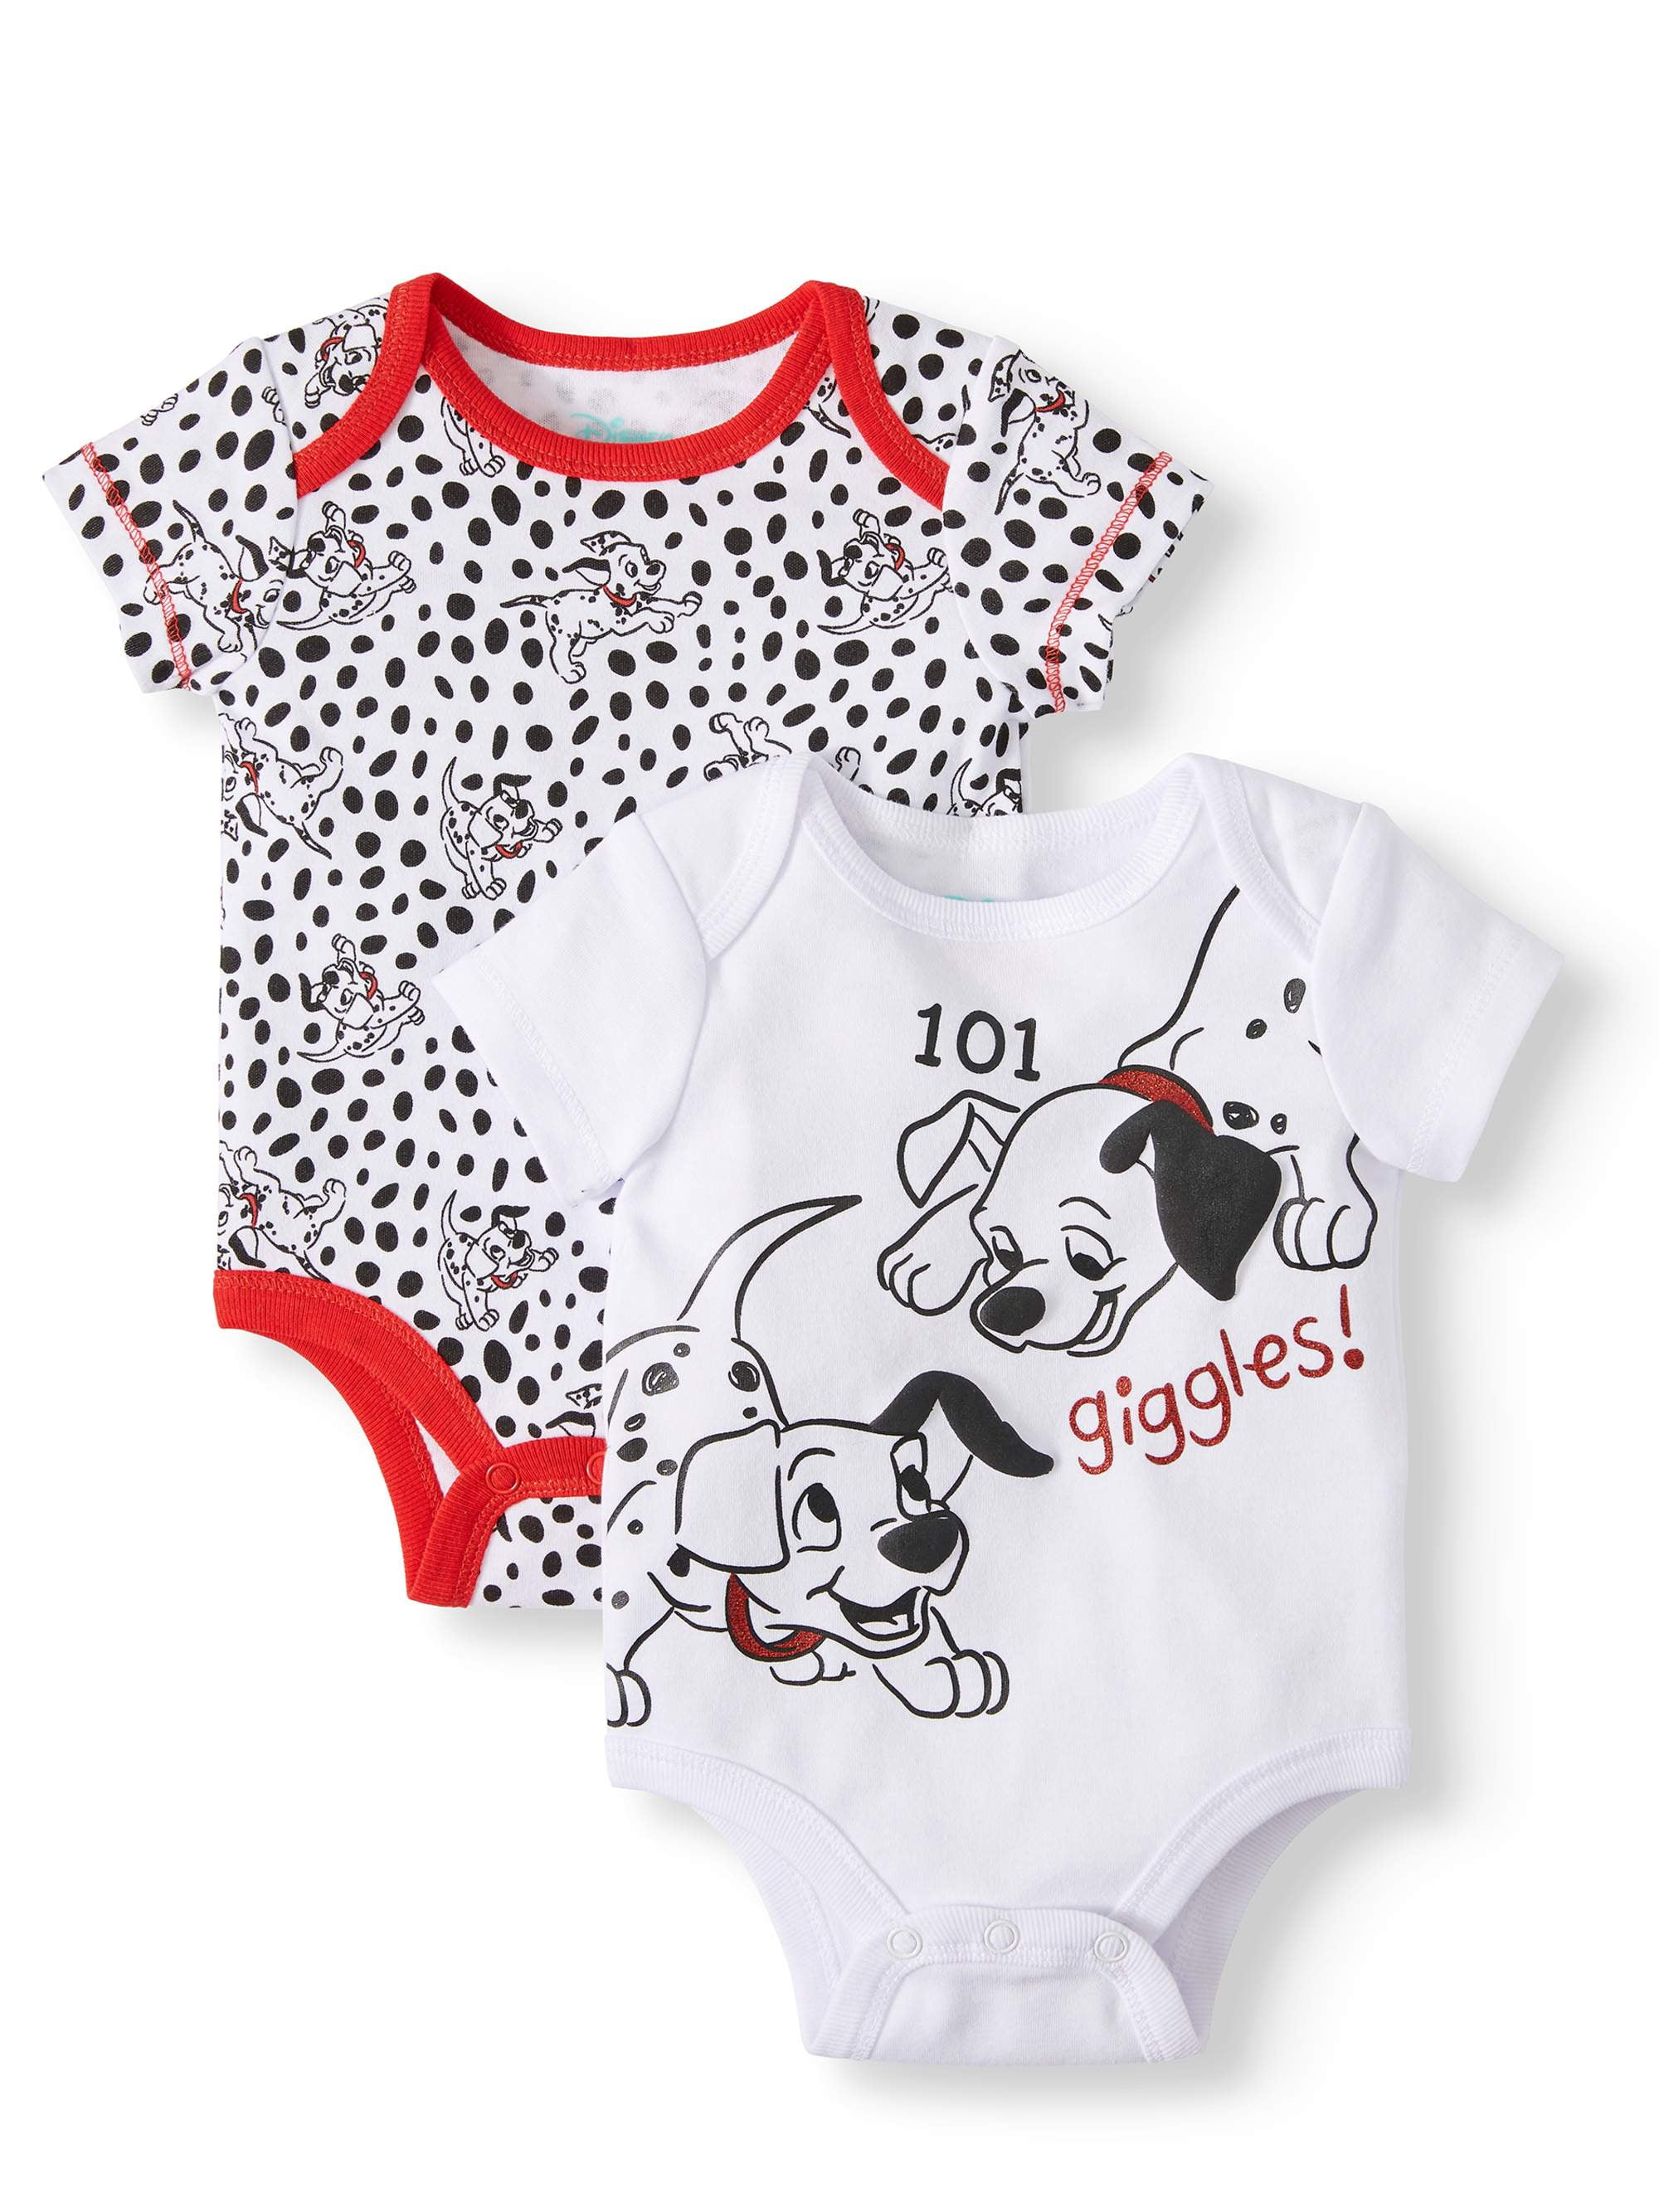 101 dalmatians children's clothes